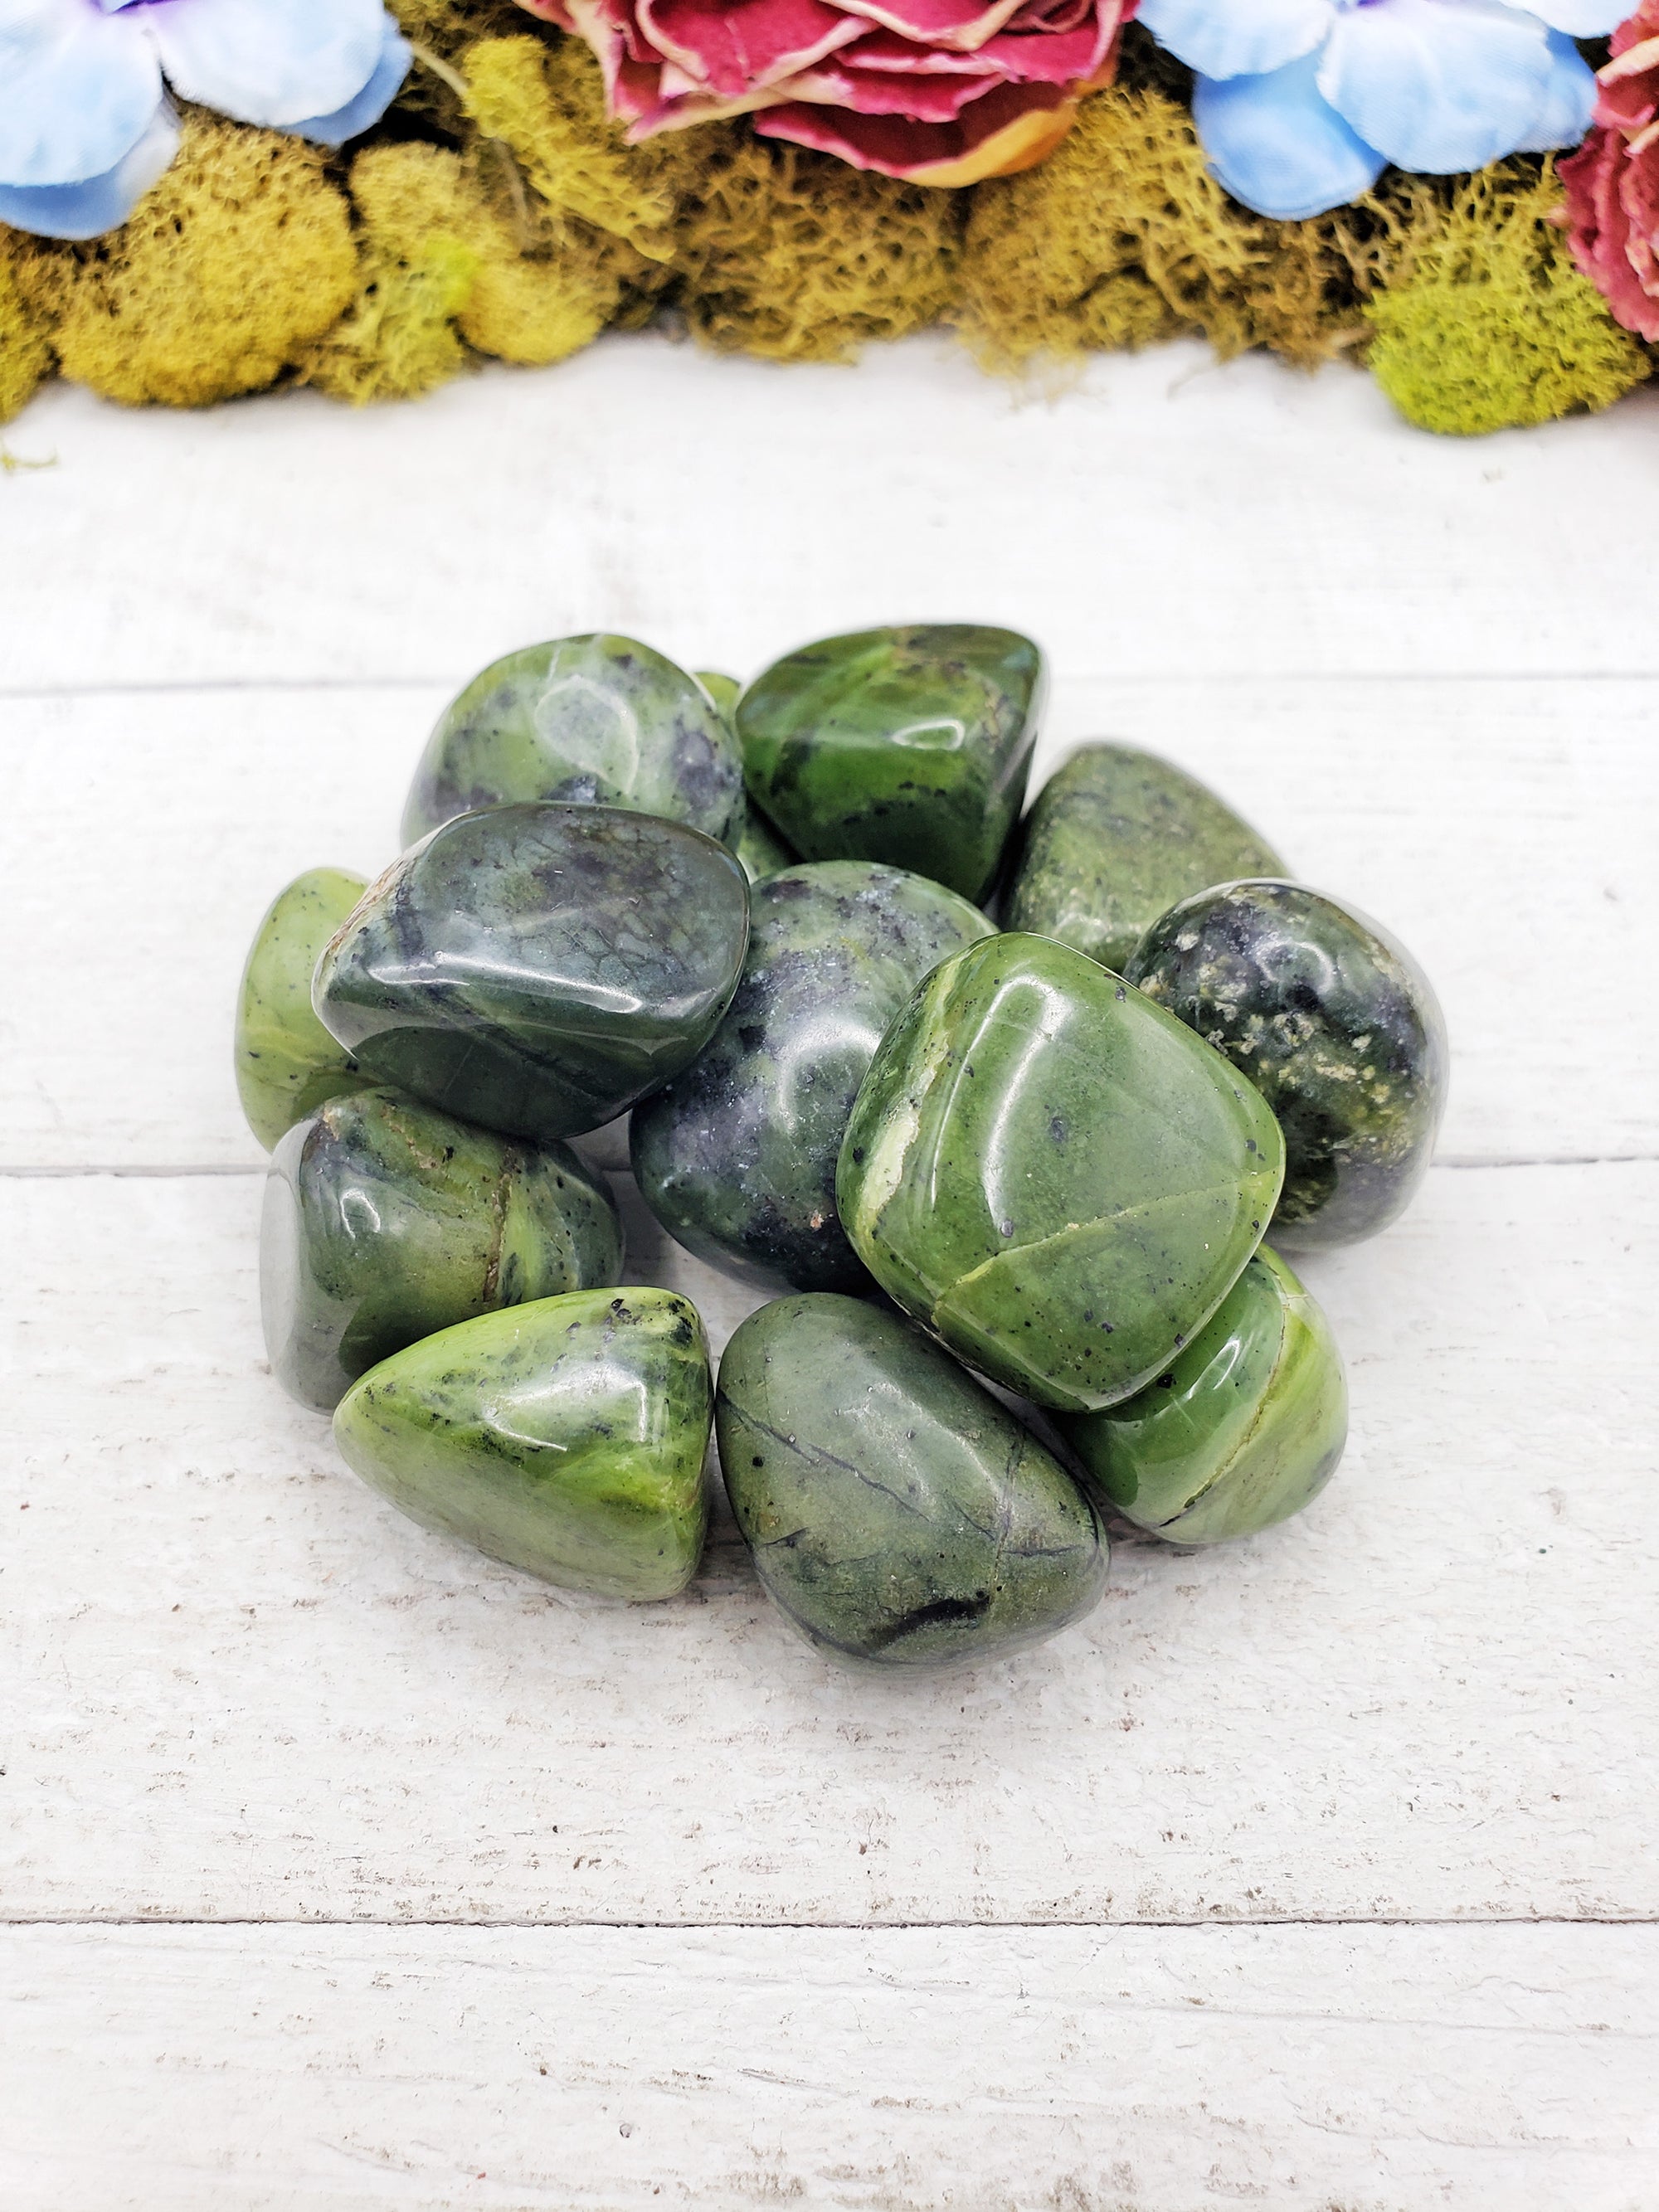 nephrite jade stones on display